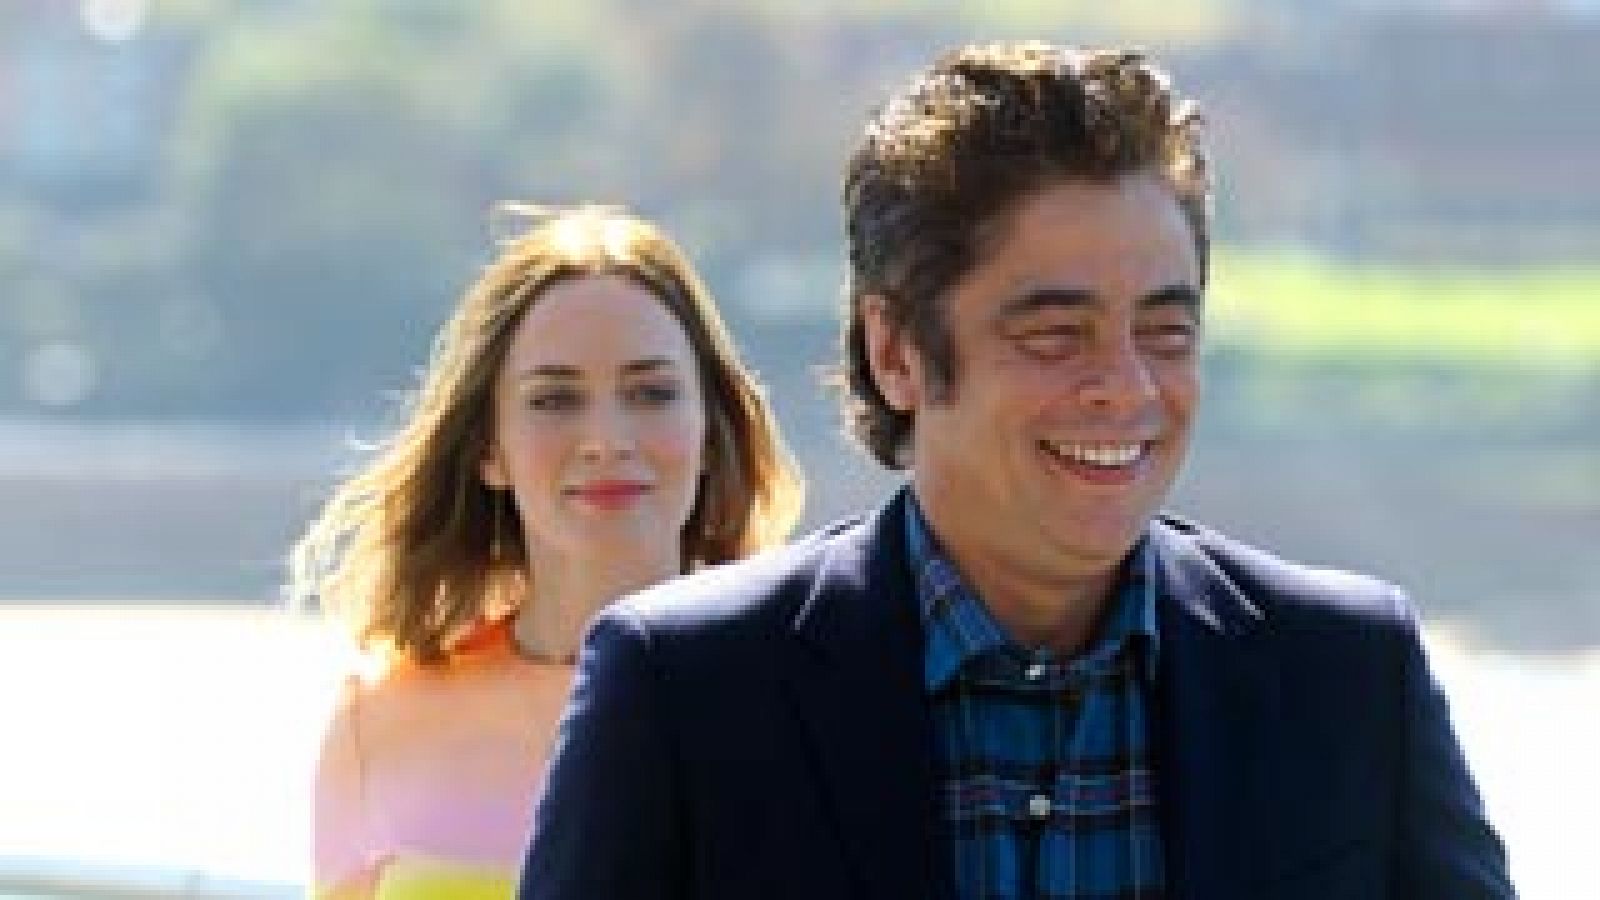 Se estrena 'Sicario', sobre la guerra sucia contra el narcotráfico en la frontera de México y EE.UU. RTVE.es entrevista a sus protagonistas Benicio del Toro y Emily Blunt, y su director Denis Villeneuve.